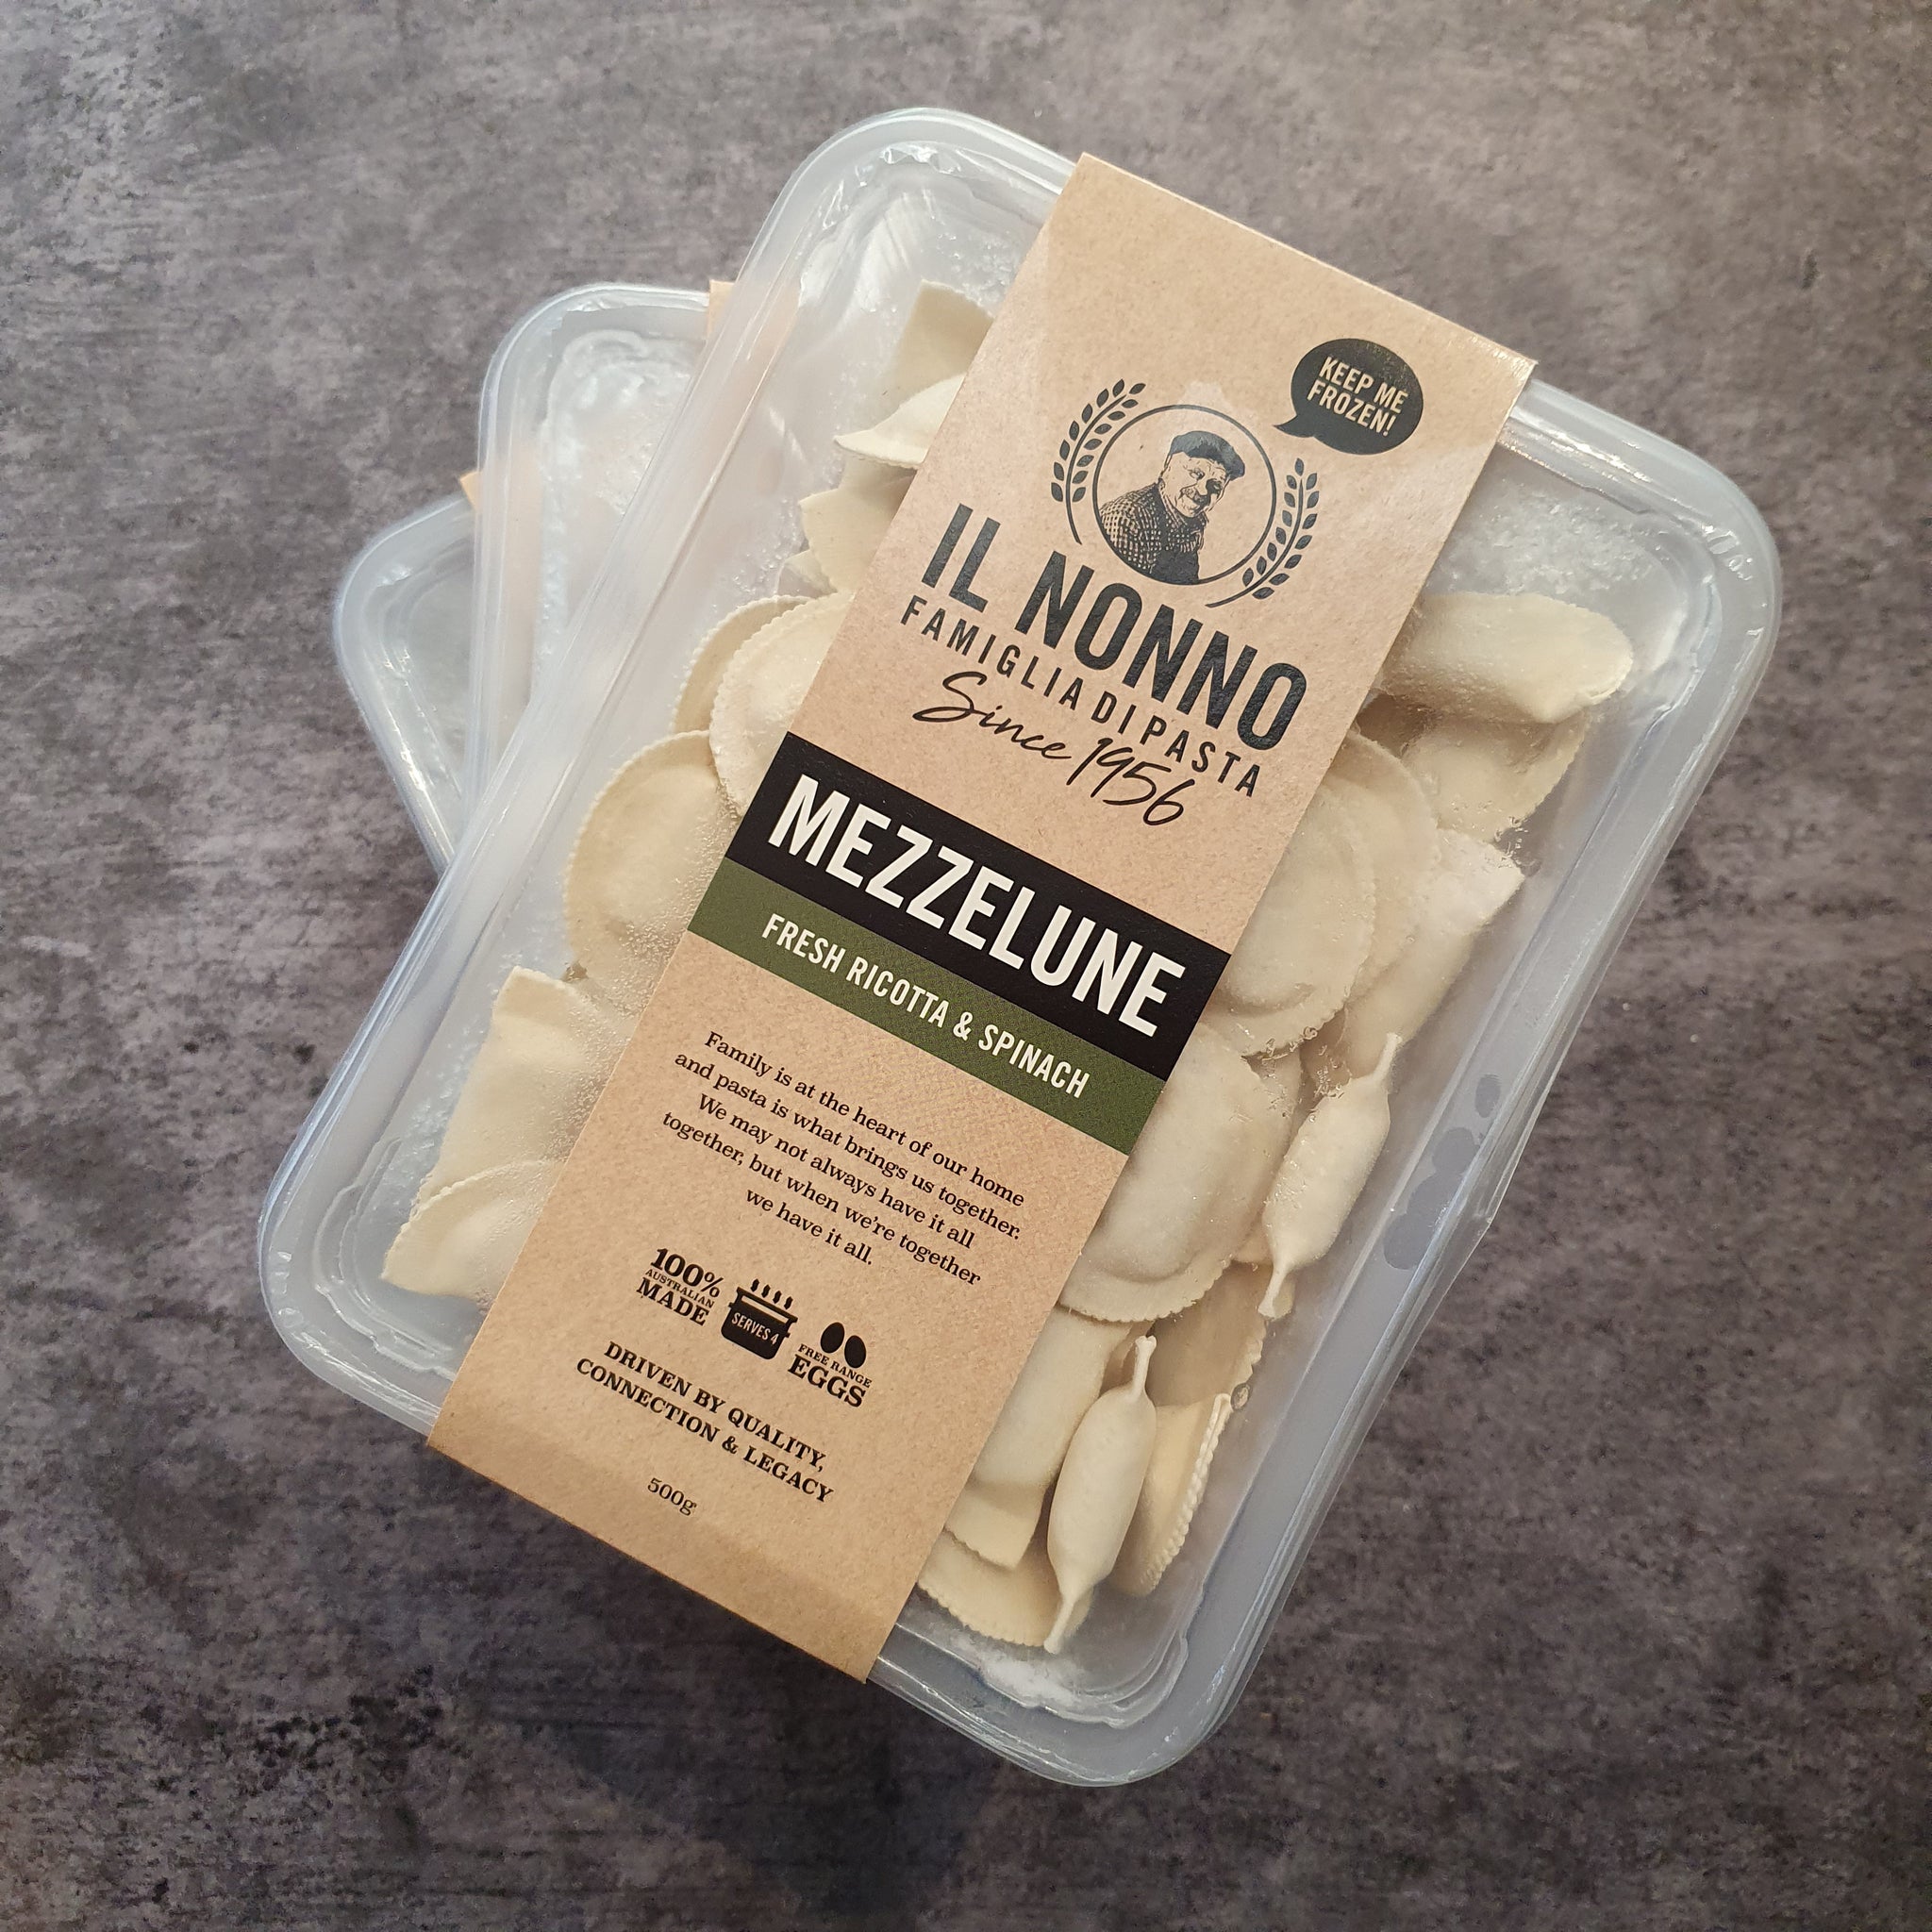 Ricotta & Spinach Mezzelune Pasta 500g (frozen)